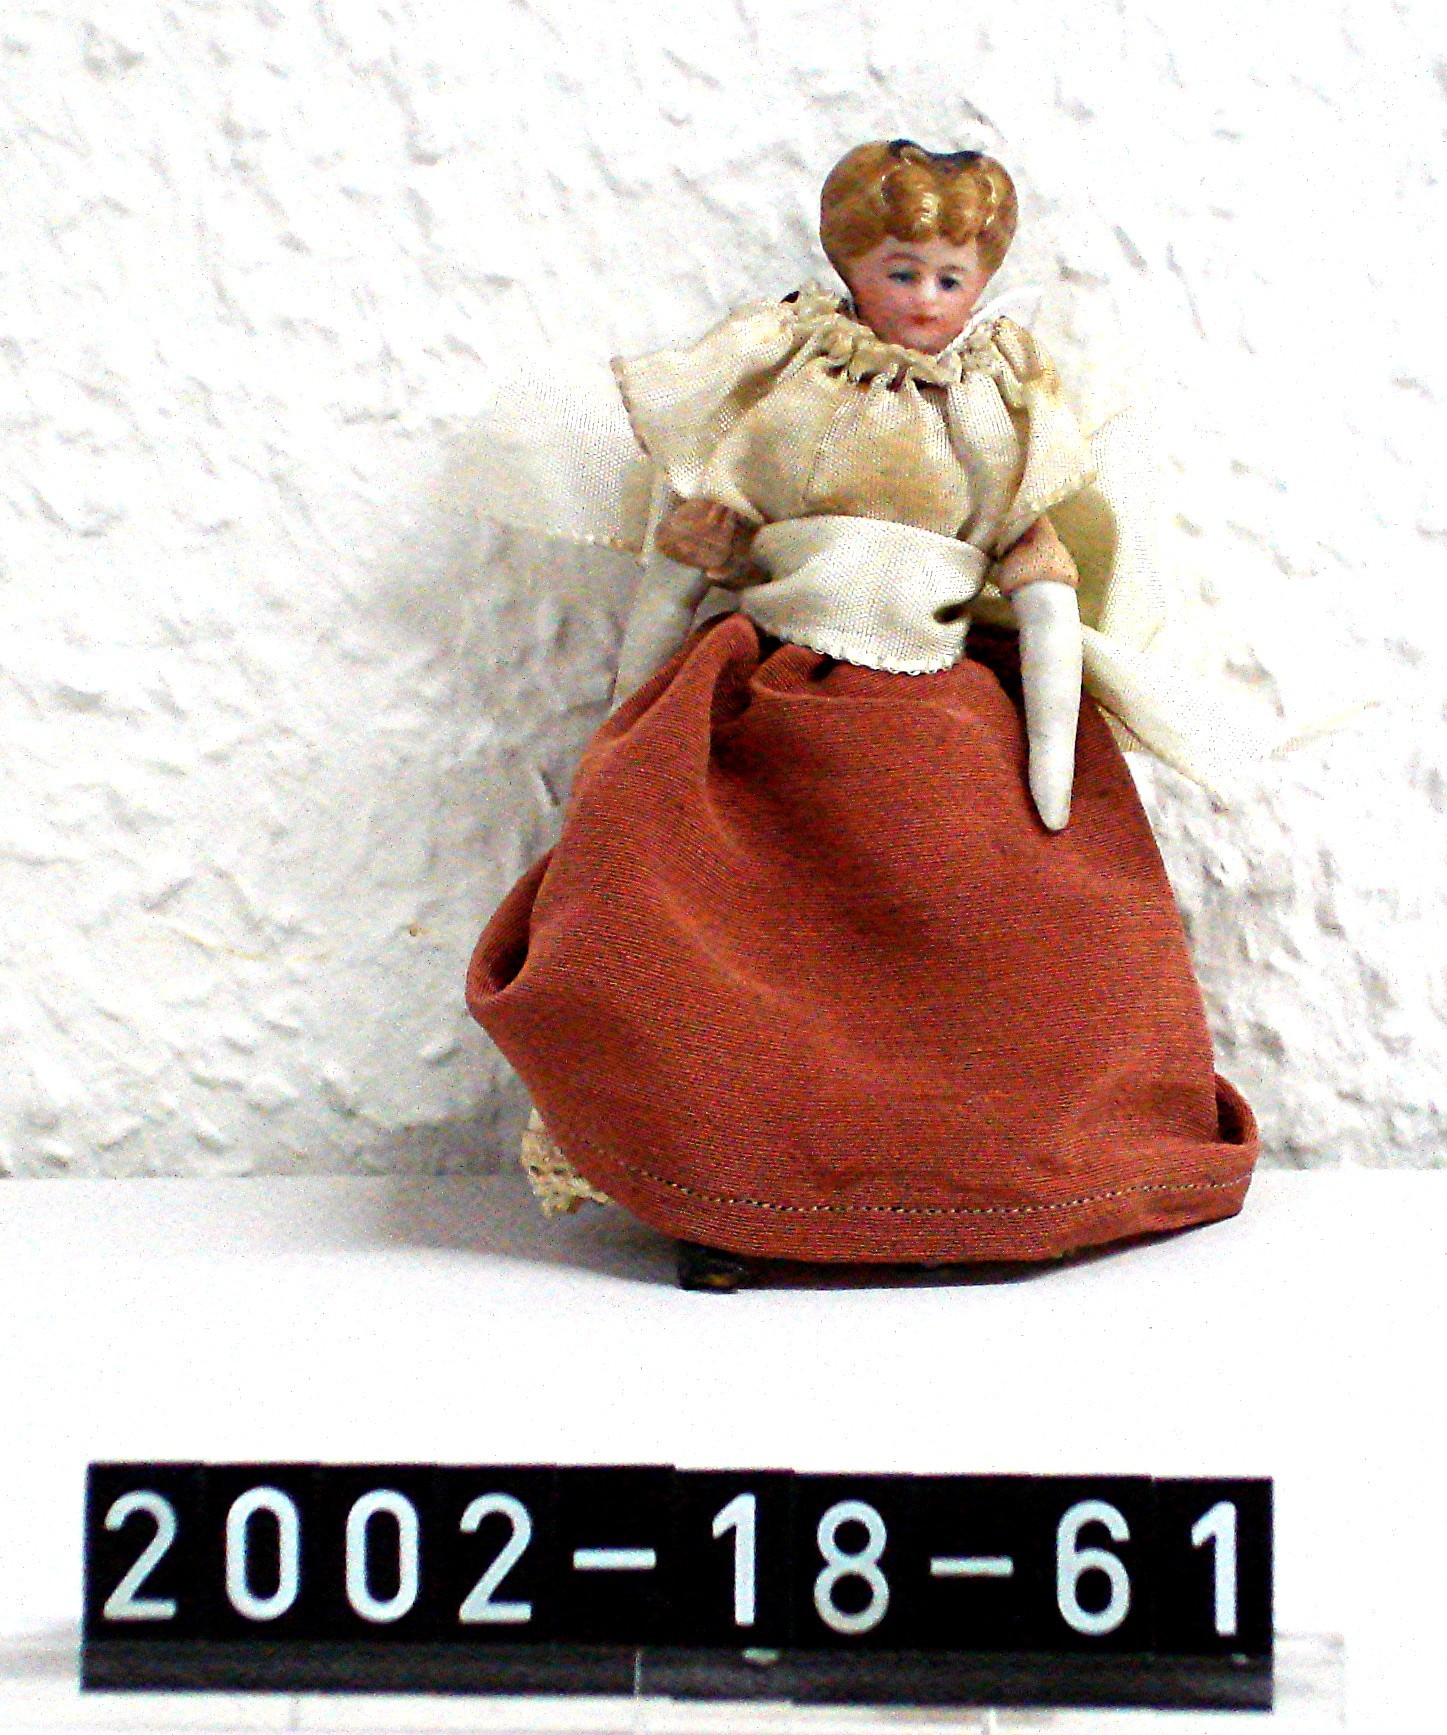 Puppe; Porzellanpuppe; Puppenspielzeug; um 1900 (Stadtmuseum Bad Dürkheim, Museumsgesellschaft Bad Dürkheim e.V. CC BY-NC-SA)